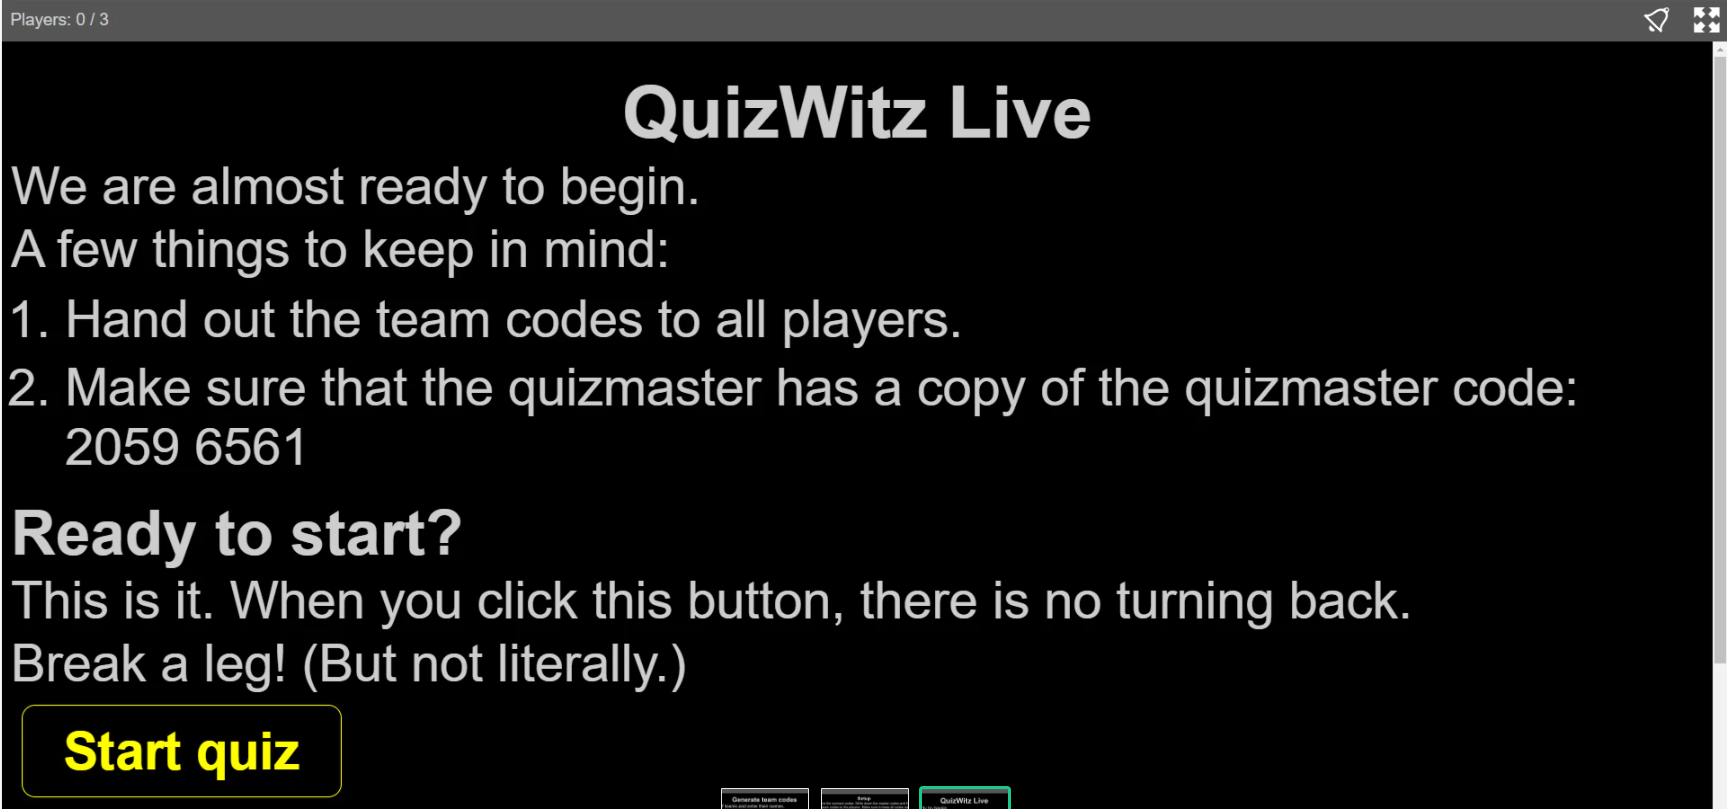 Quizmaster app - start quiz